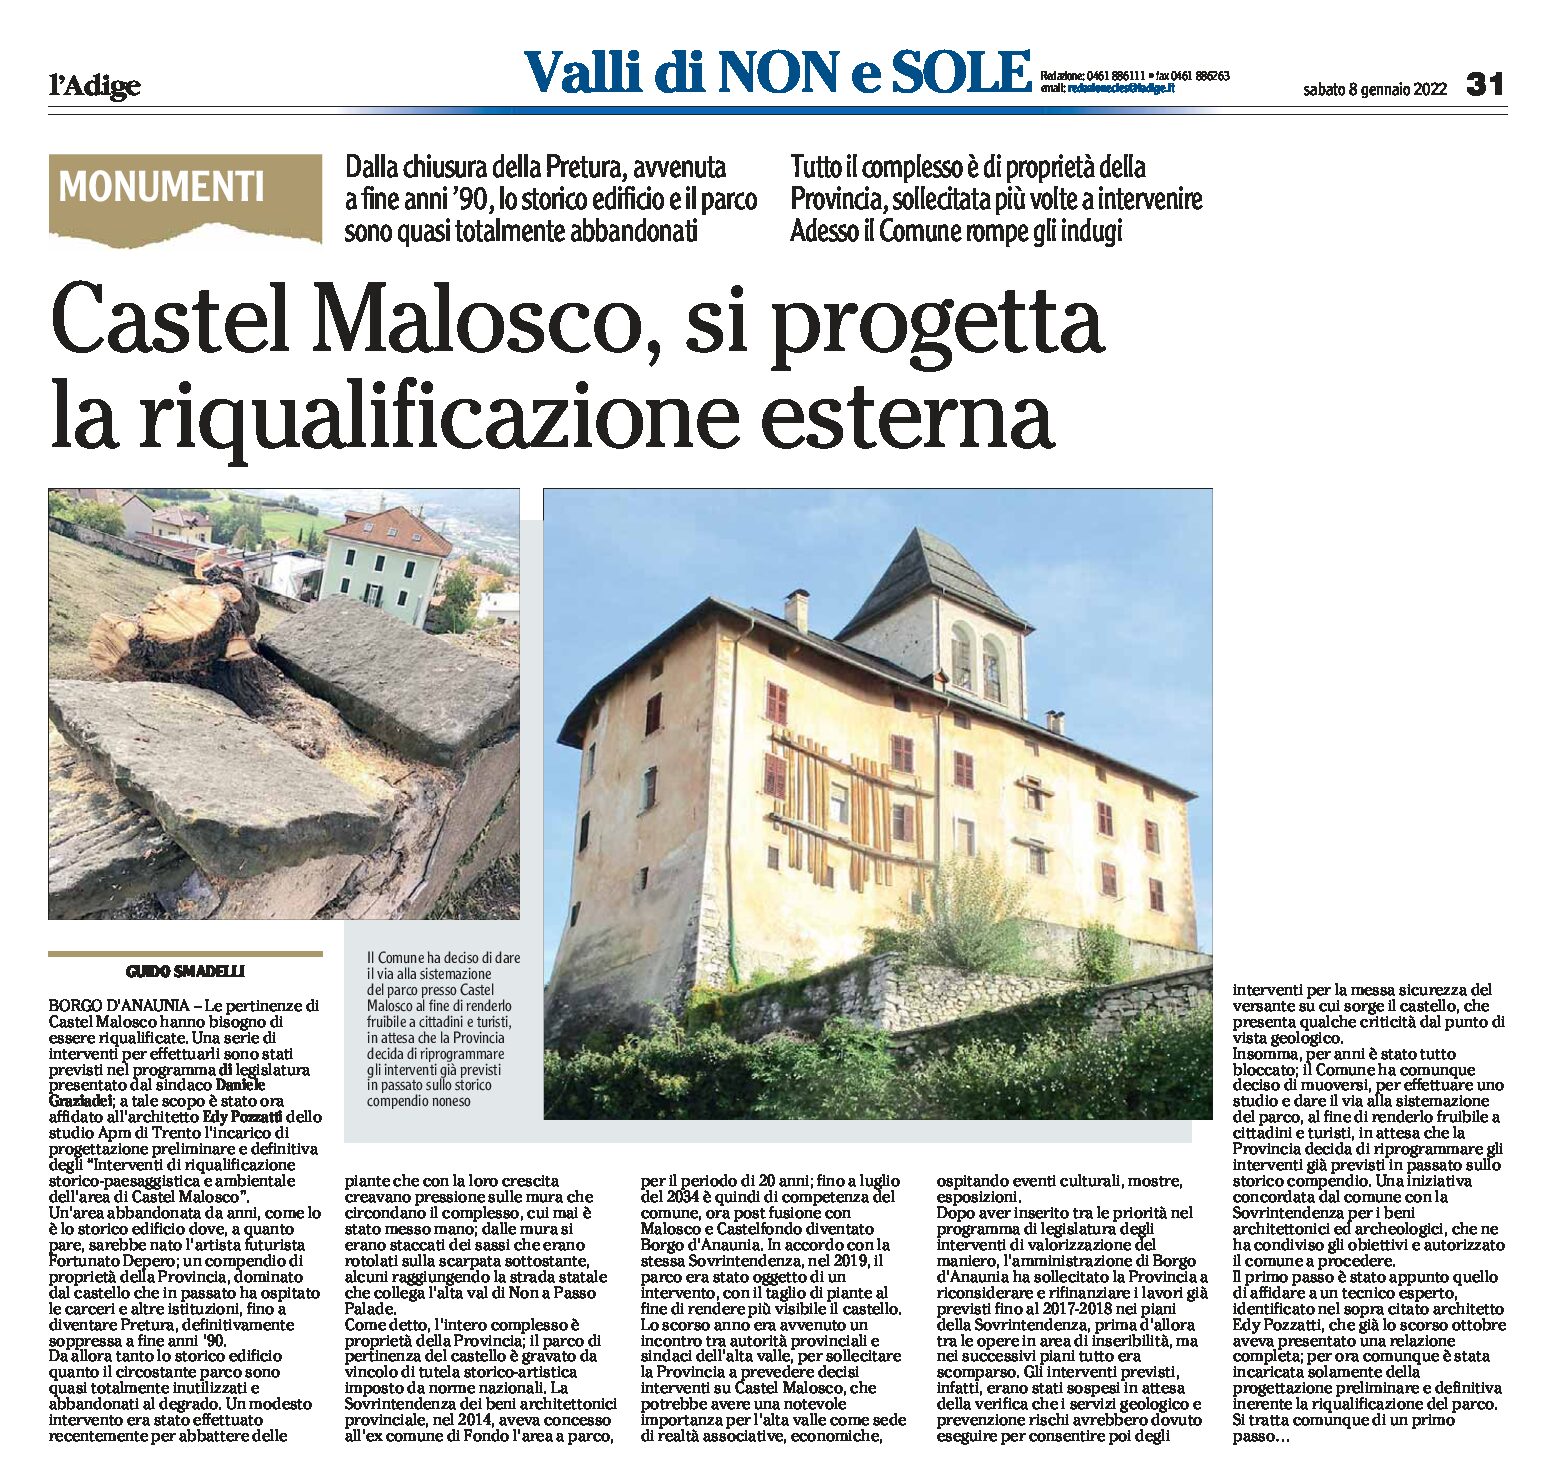 Castel Malosco e parco: si progetta la riqualificazione esterna